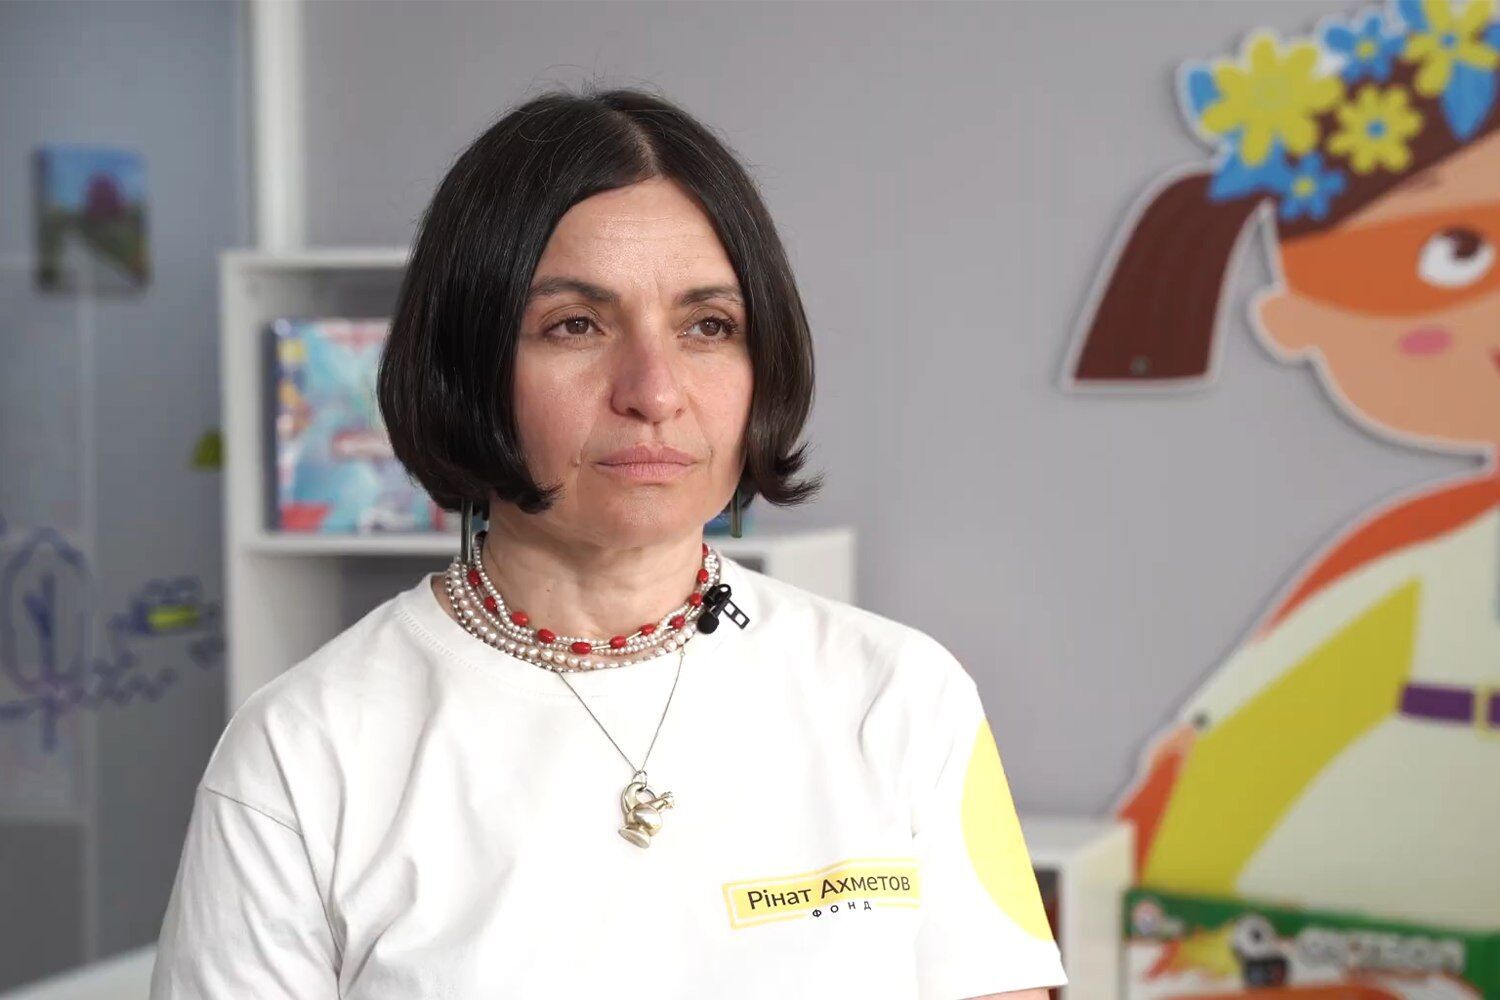 Фонд Рината Ахметова обустроит новое жилье в Днепре для более чем 200 семей из Мариуполя